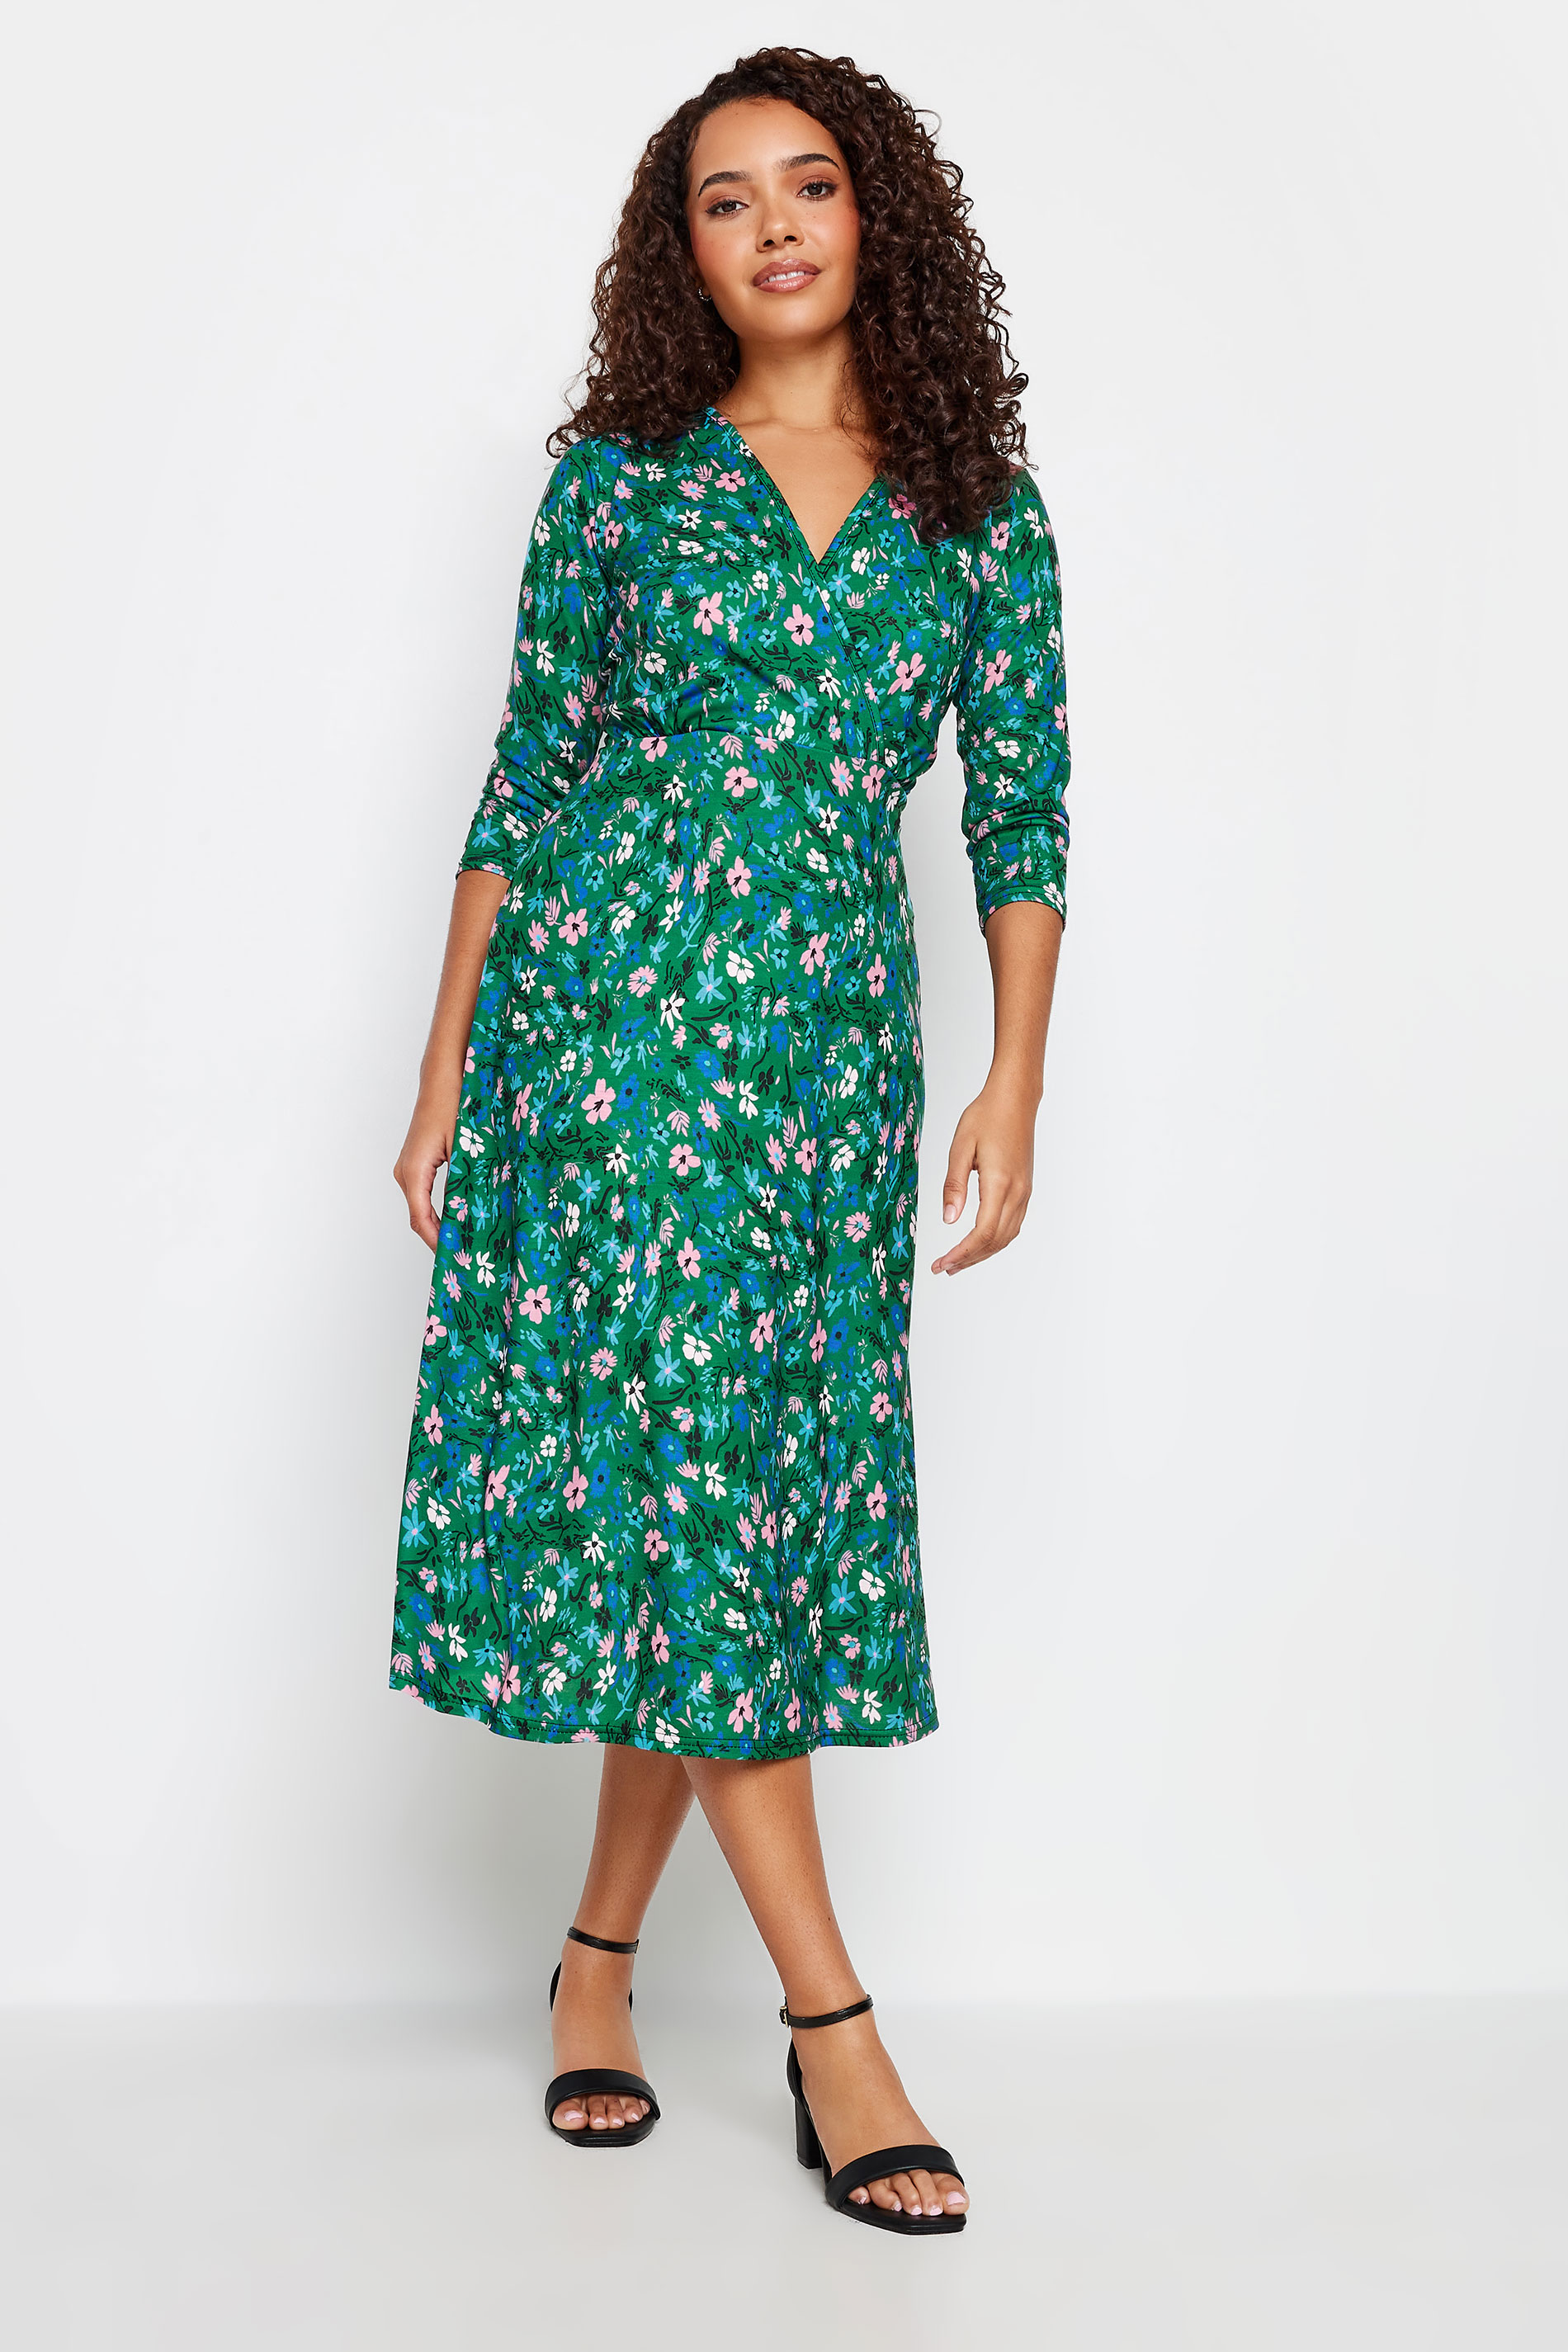 M&Co Green Floral Print Wrap Dress | M&Co  1